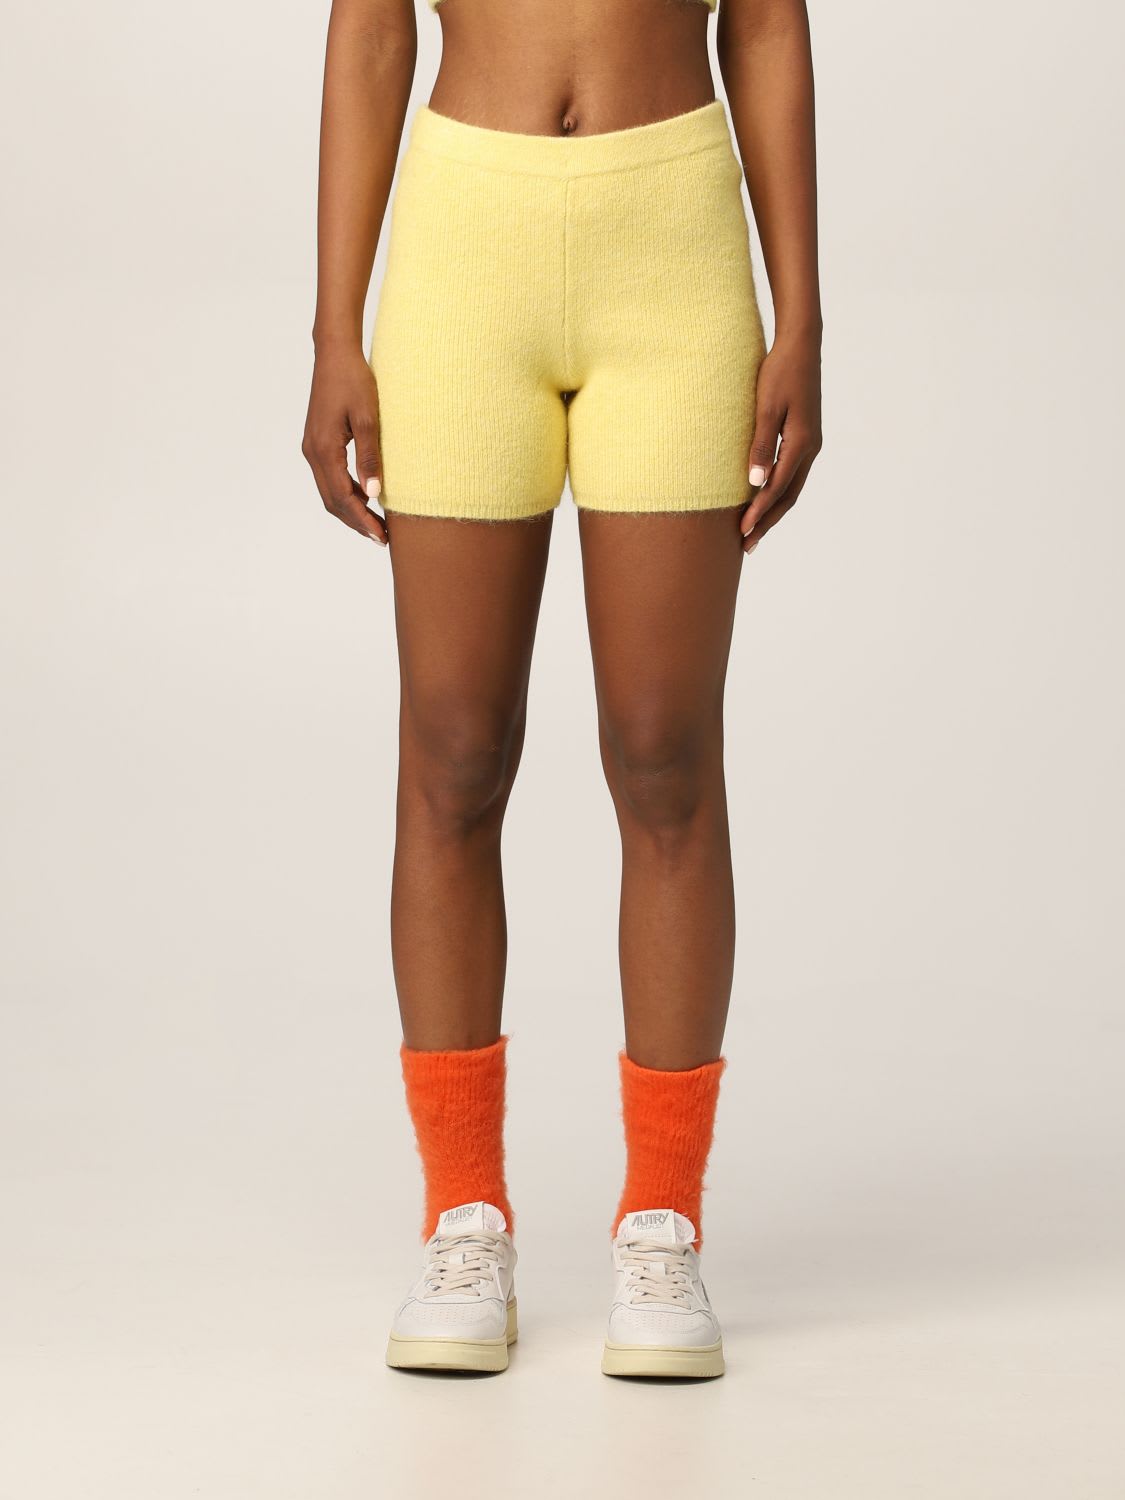 Heron Preston For Calvin Klein Short Shorts Orange 2.0 Heron Preston X Calvin Klein